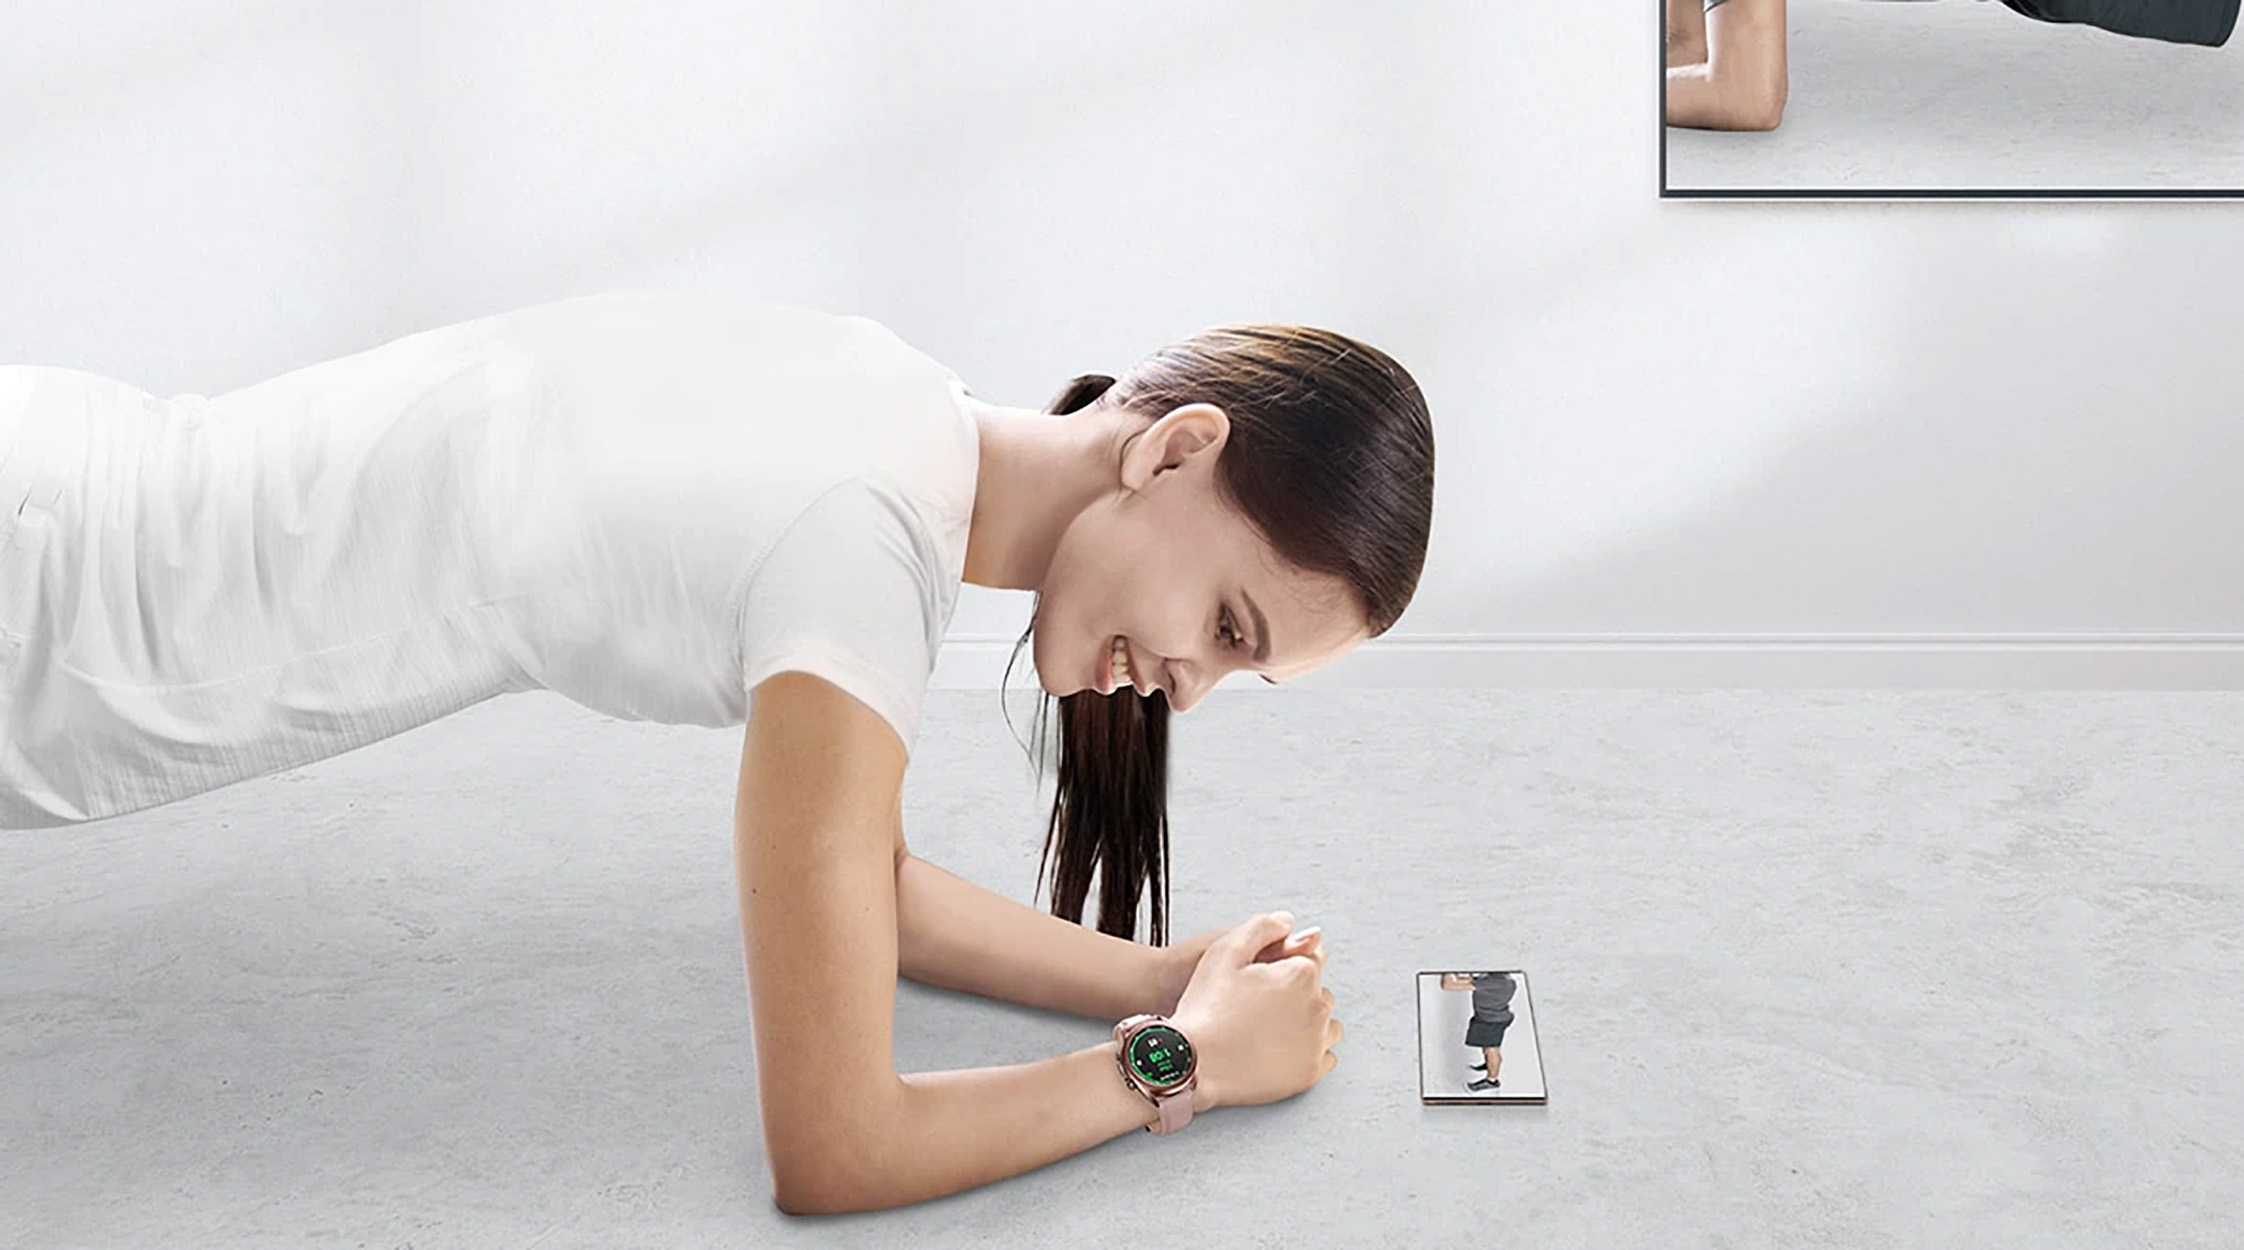 Galaxy Smartwatch 3 bronze Armband, - Edelstahl 190 Größe S/M (130 Echtleder Watch SAMSUNG mm),